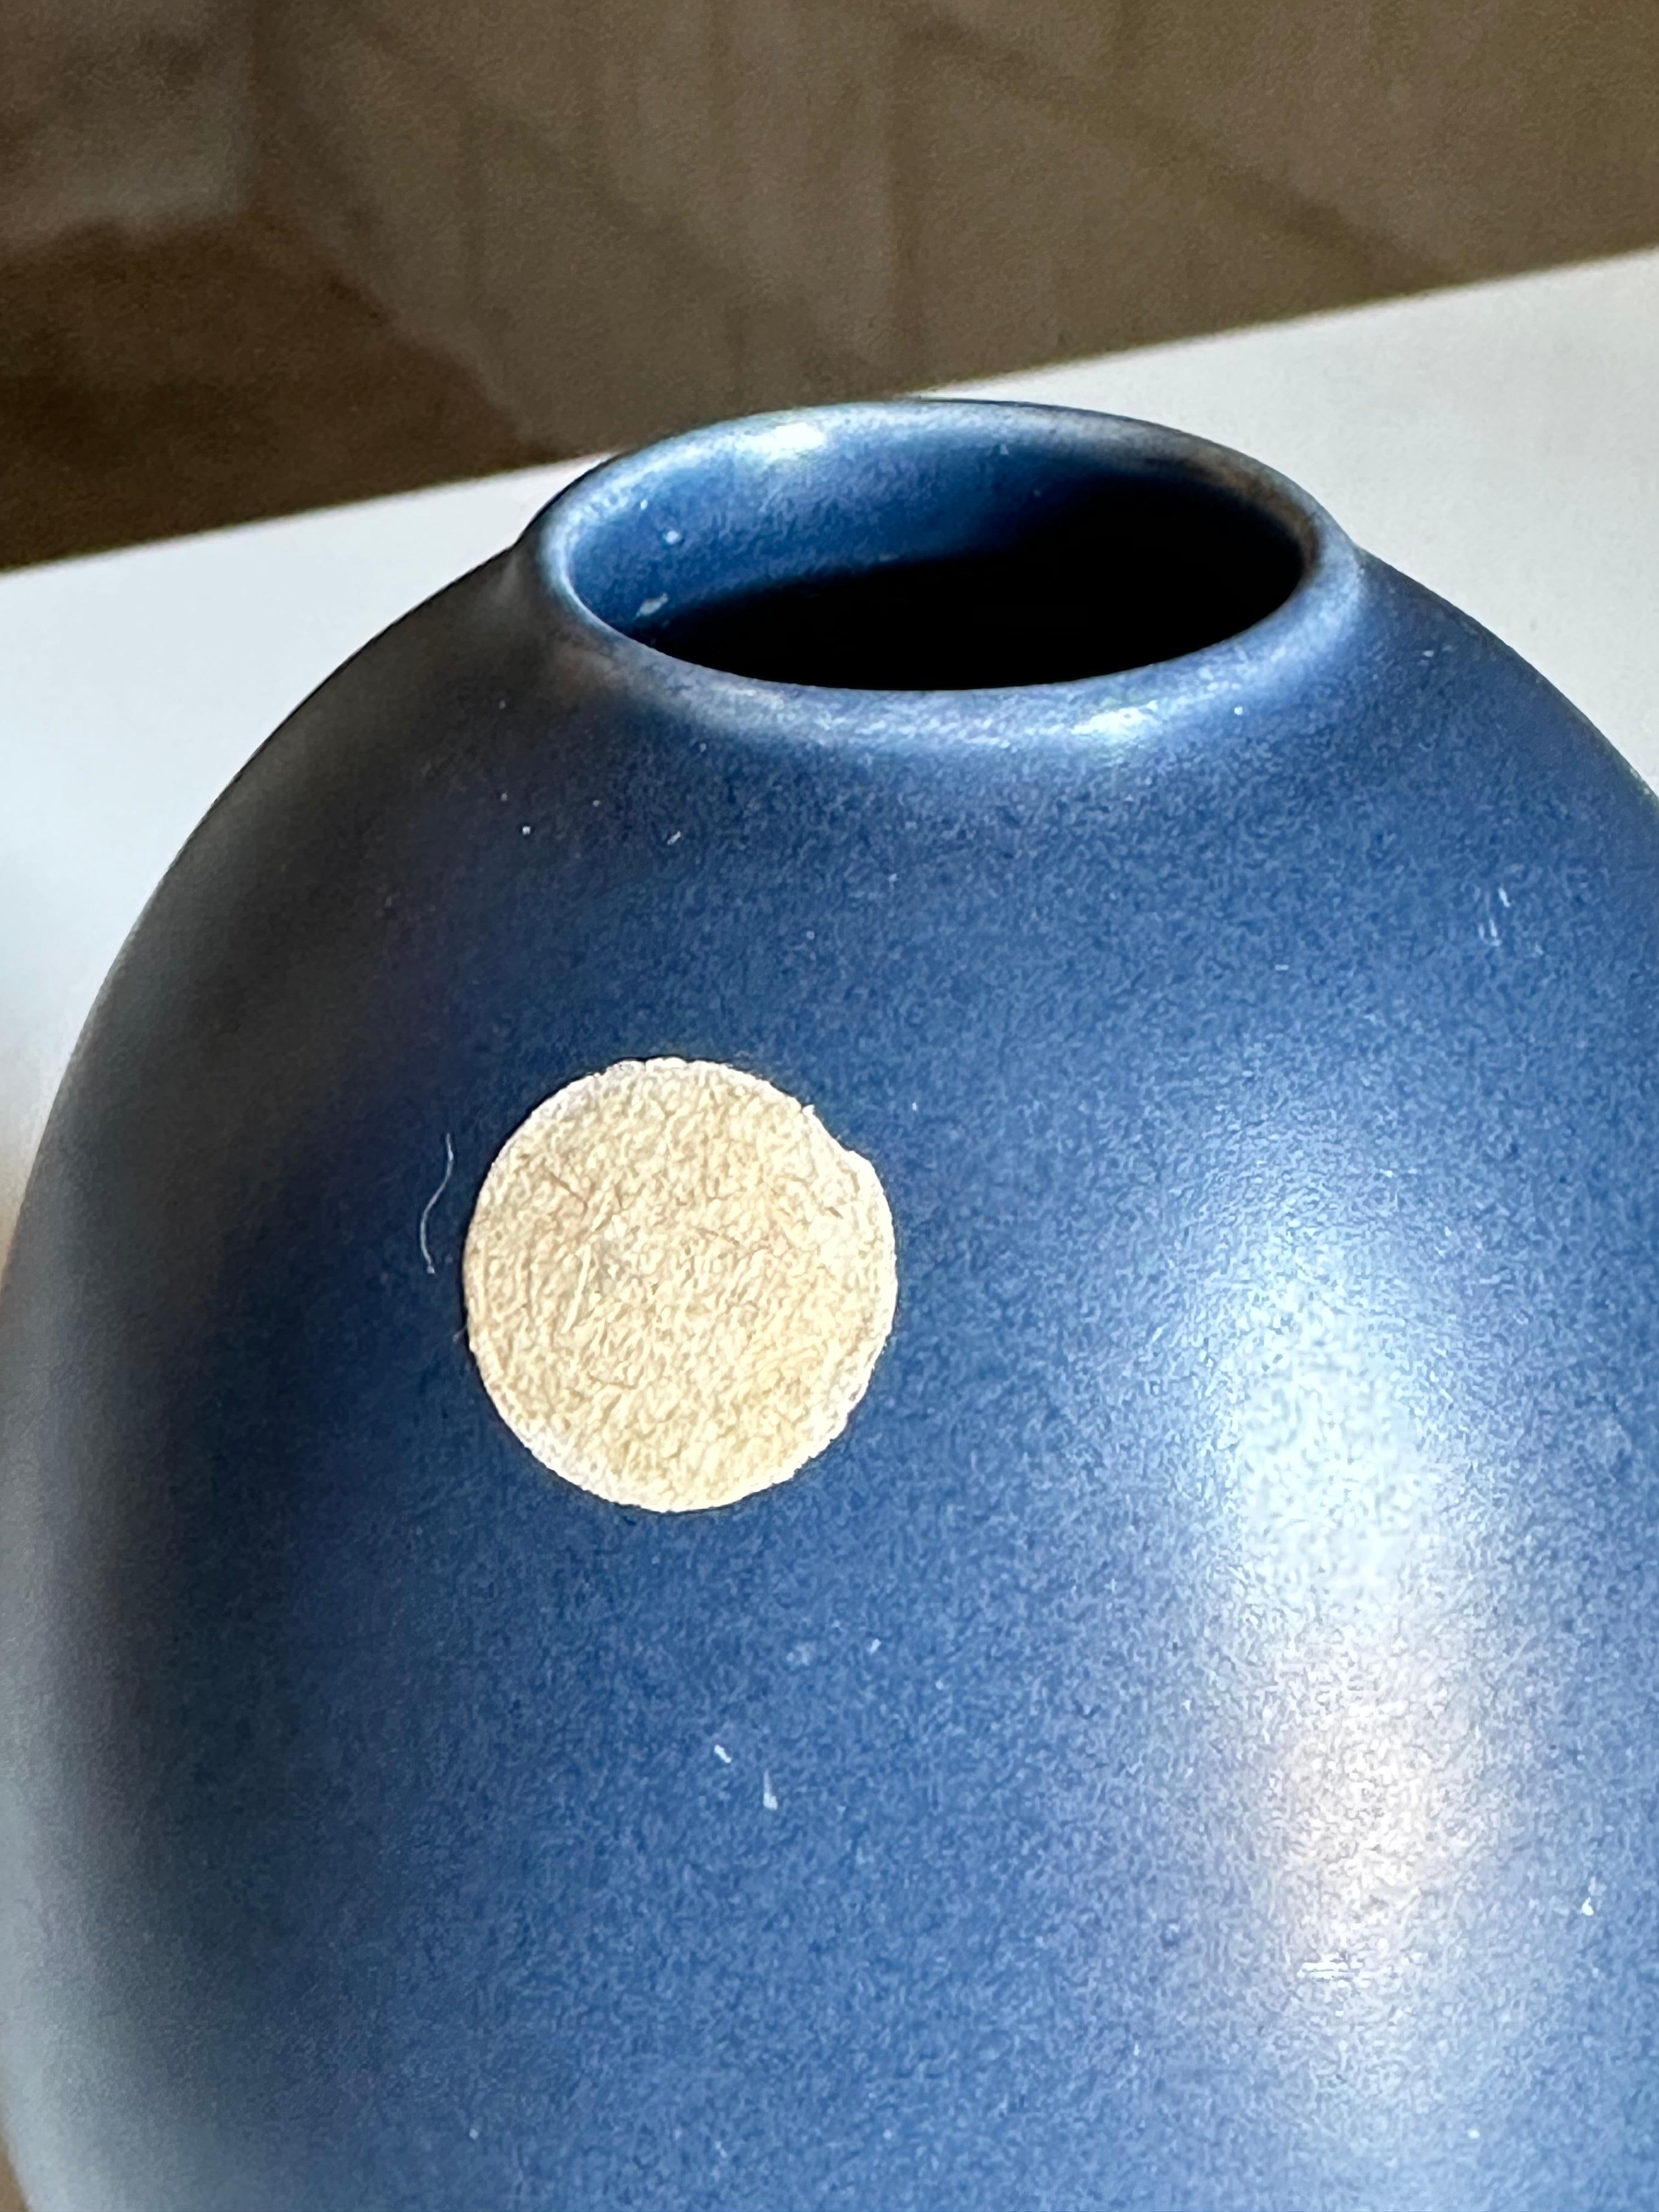 Wunderschöne Vase in einem leuchtenden Blau, hergestellt von Bo Fajans. Tolle bauchige, runde Form und auffällige Farbe. Diese Vase hat noch ihren Originalaufkleber auf der Außenseite, der allerdings schon verblasst ist. Die Vase ist auch auf dem